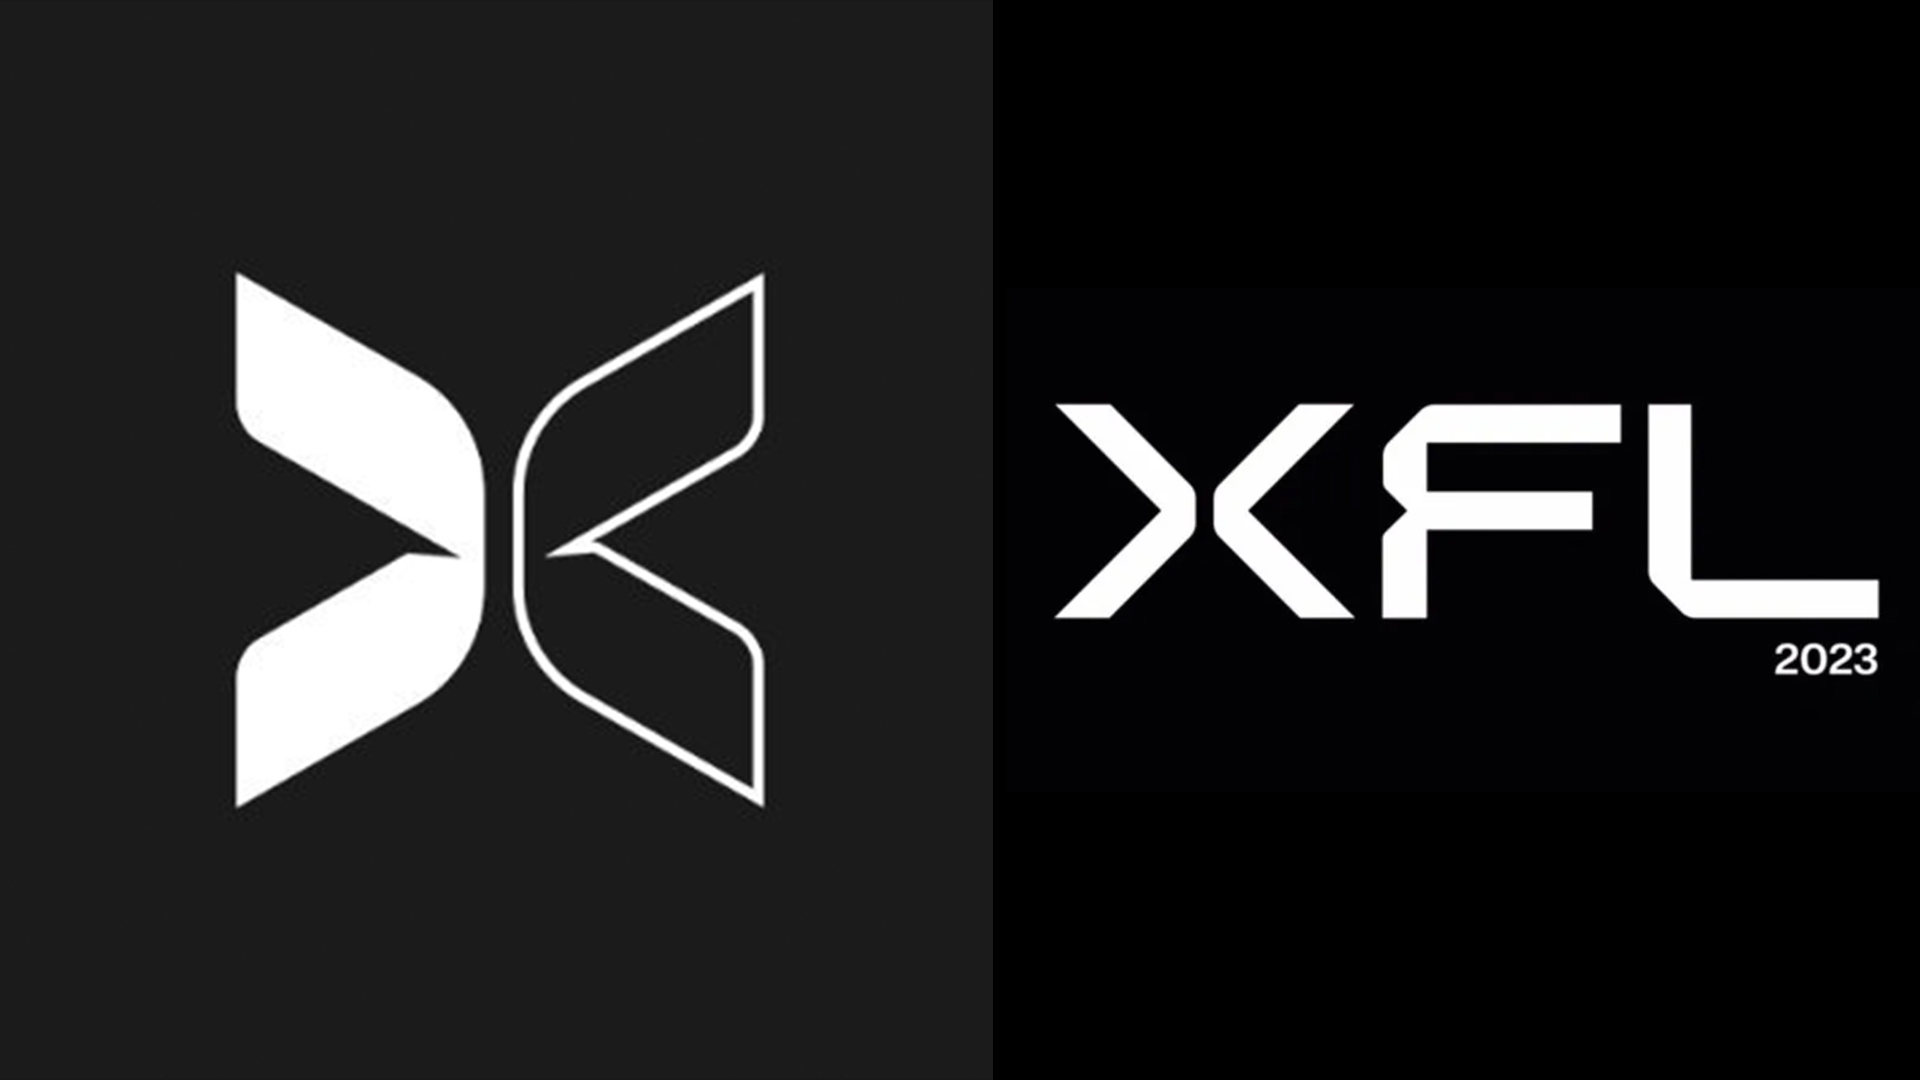 XFL reveals team names and logos